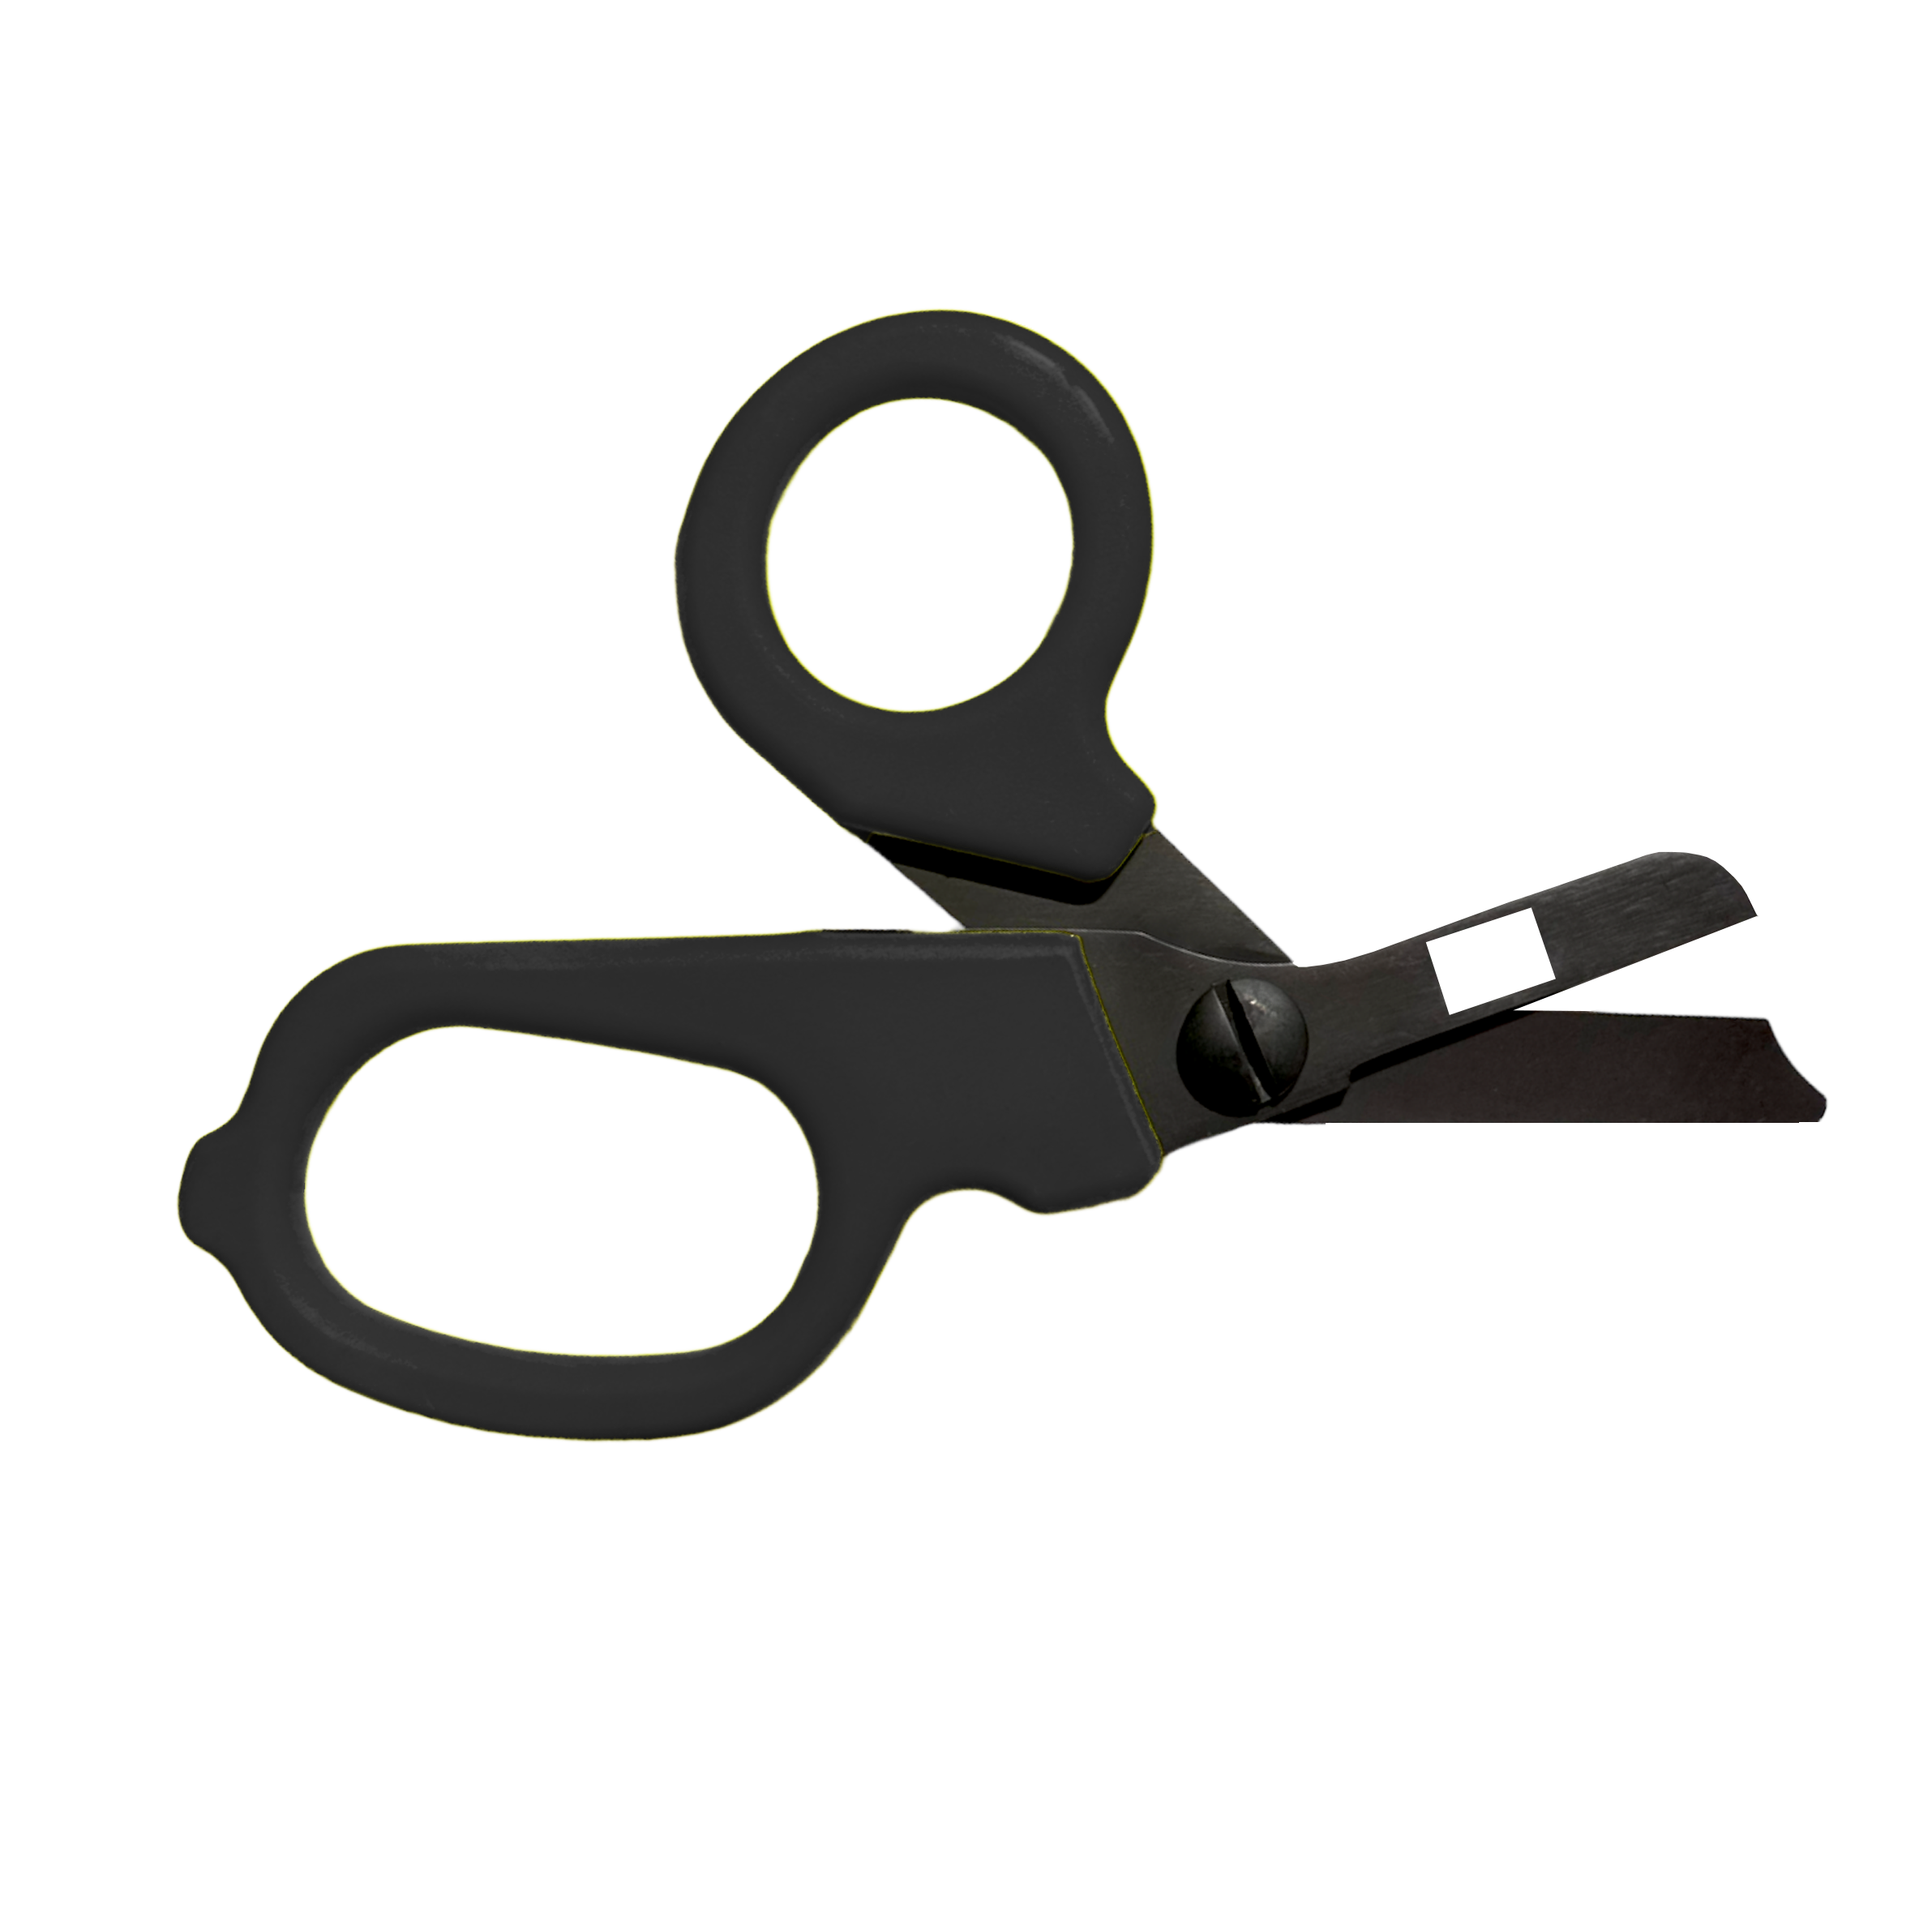 Black Silhouette Scissors - Small